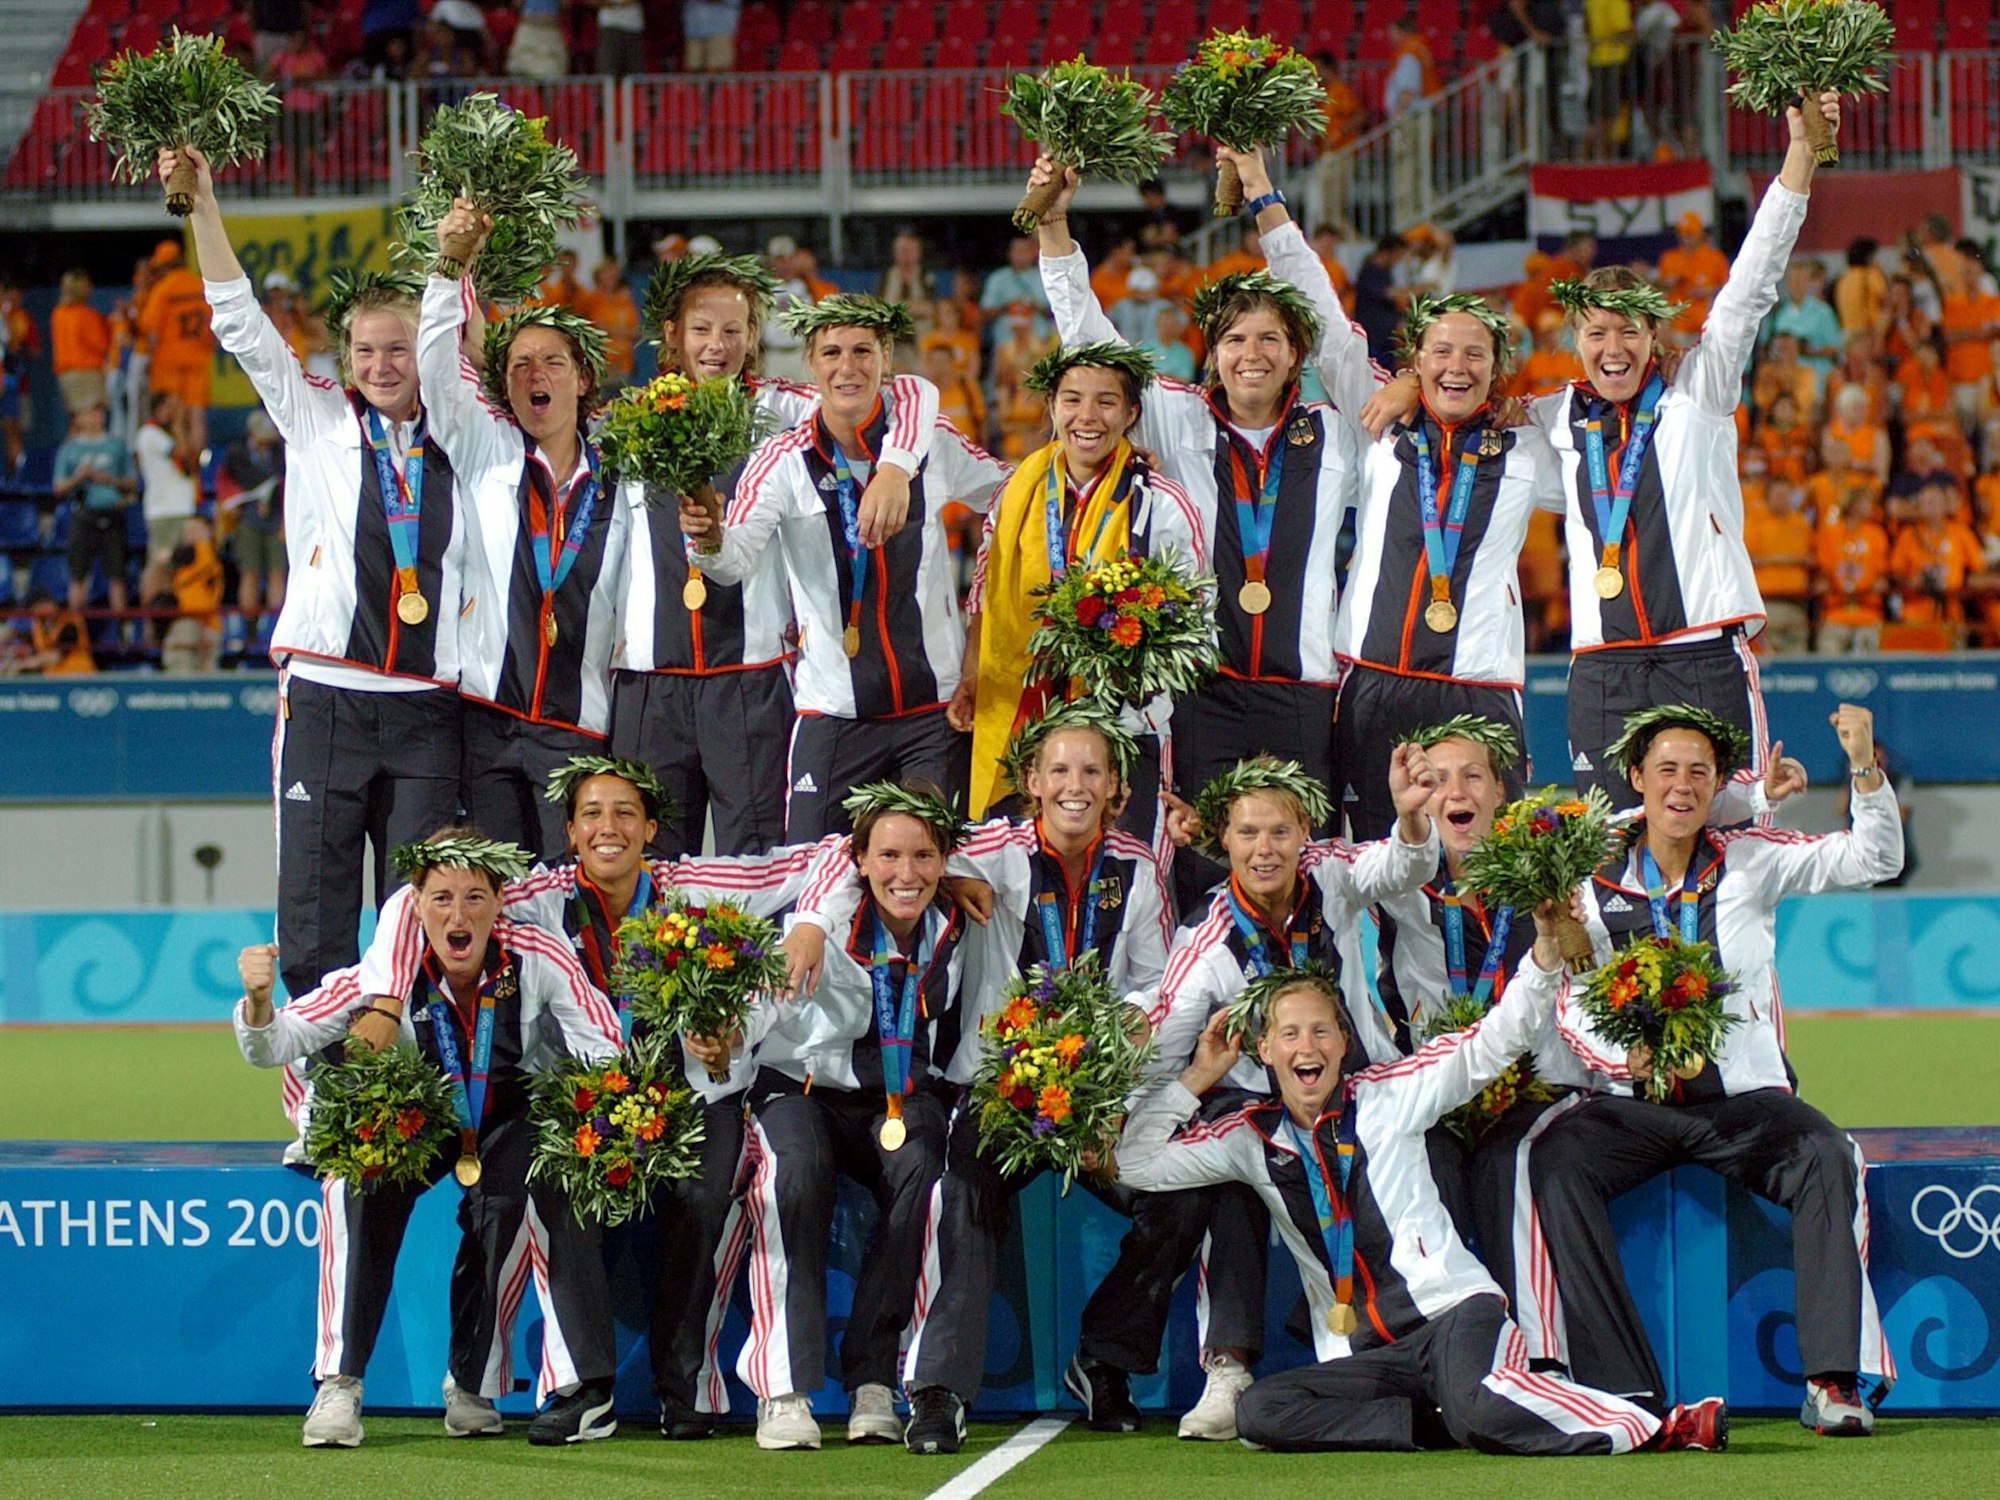 Das deutsche Hockey-Team der Damen feiert den Gewinn der Goldmedaille, mit Blumensträußen in den Händen und traditionellen Lorbeerkränzen auf den Köpfen.